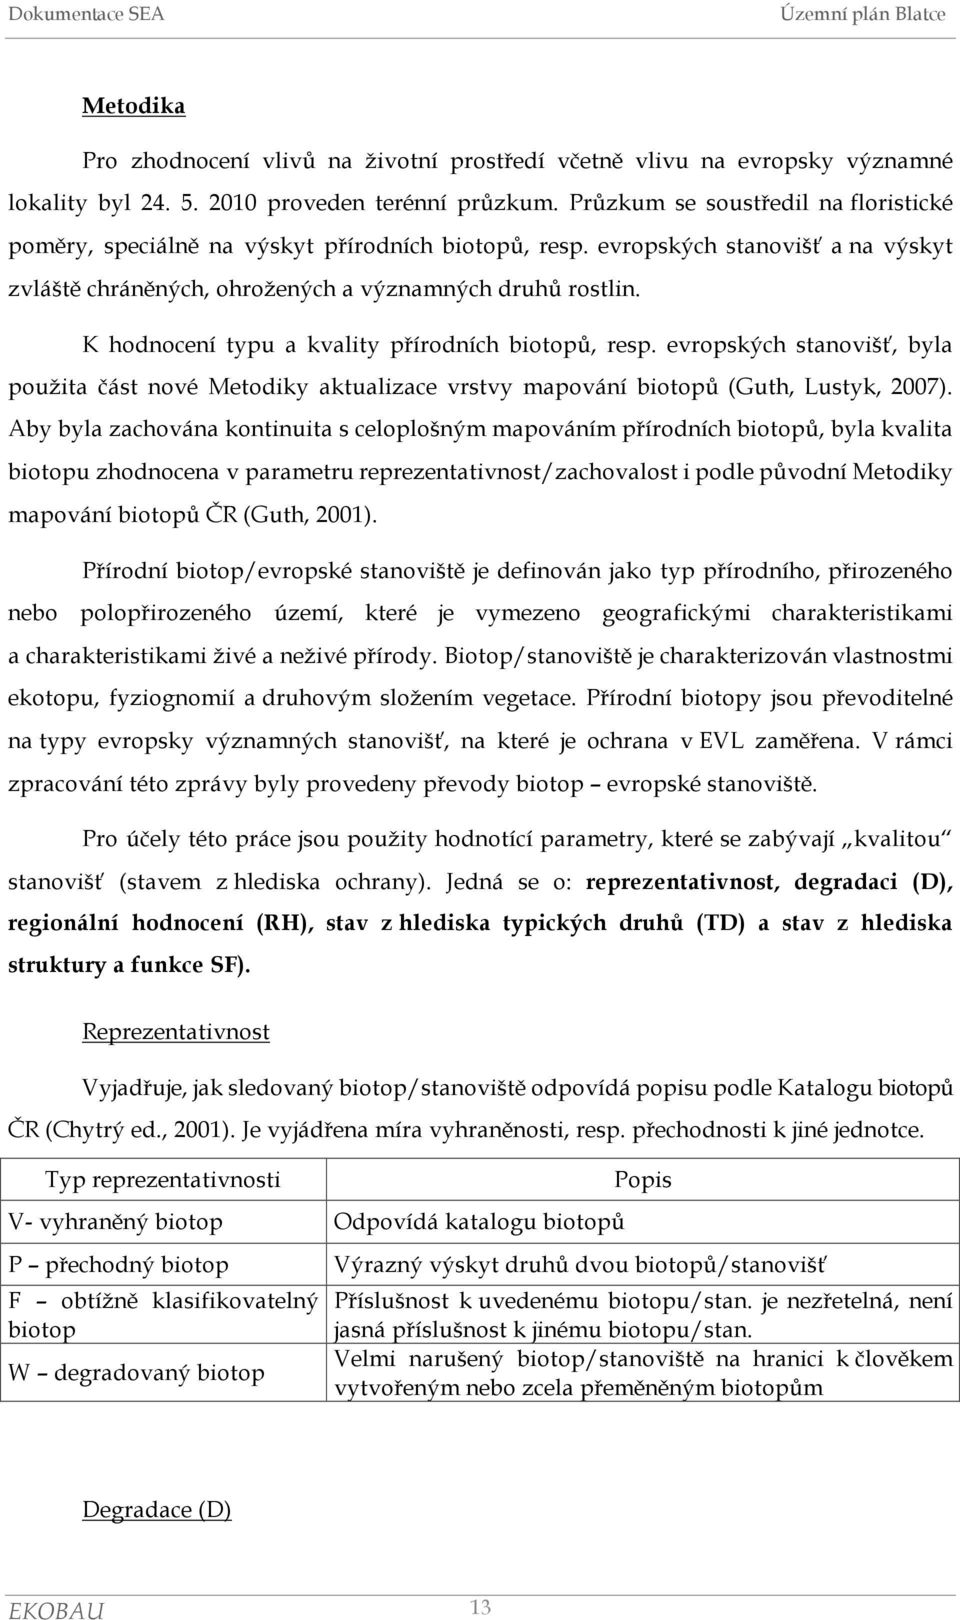 K hodnocení typu a kvality přírodních biotopů, resp. evropských stanovišť, byla použita část nové Metodiky aktualizace vrstvy mapování biotopů (Guth, Lustyk, 2007).